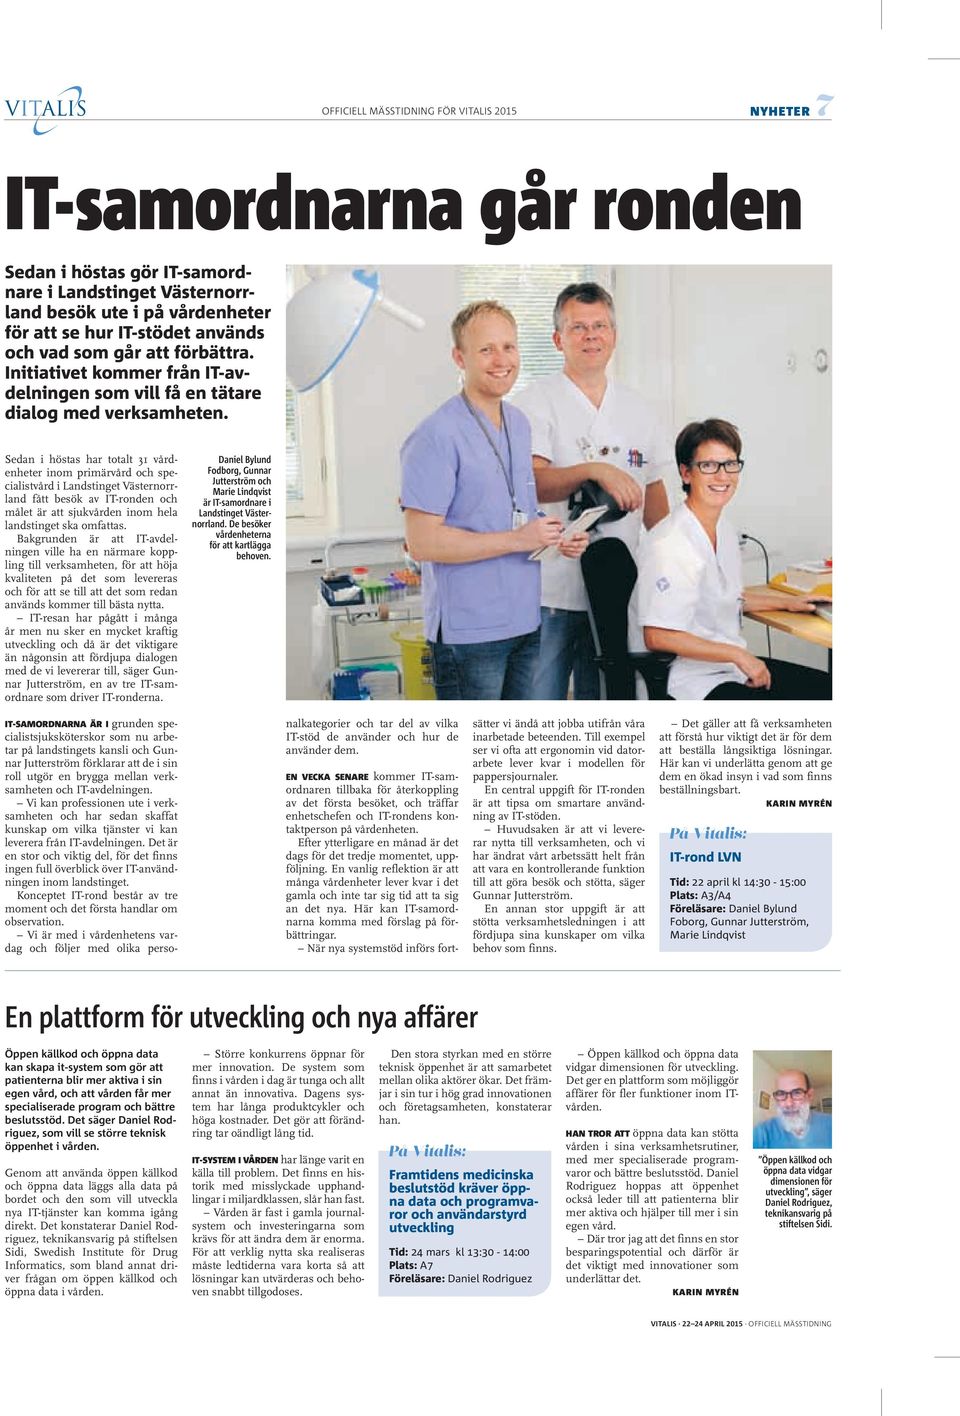 Sedan i höstas har totalt 31 vårdenheter inom primärvård och specialistvård i Landstinget Västernorrland fått besök av IT-ronden och målet är att sjukvården inom hela landstinget ska omfattas.